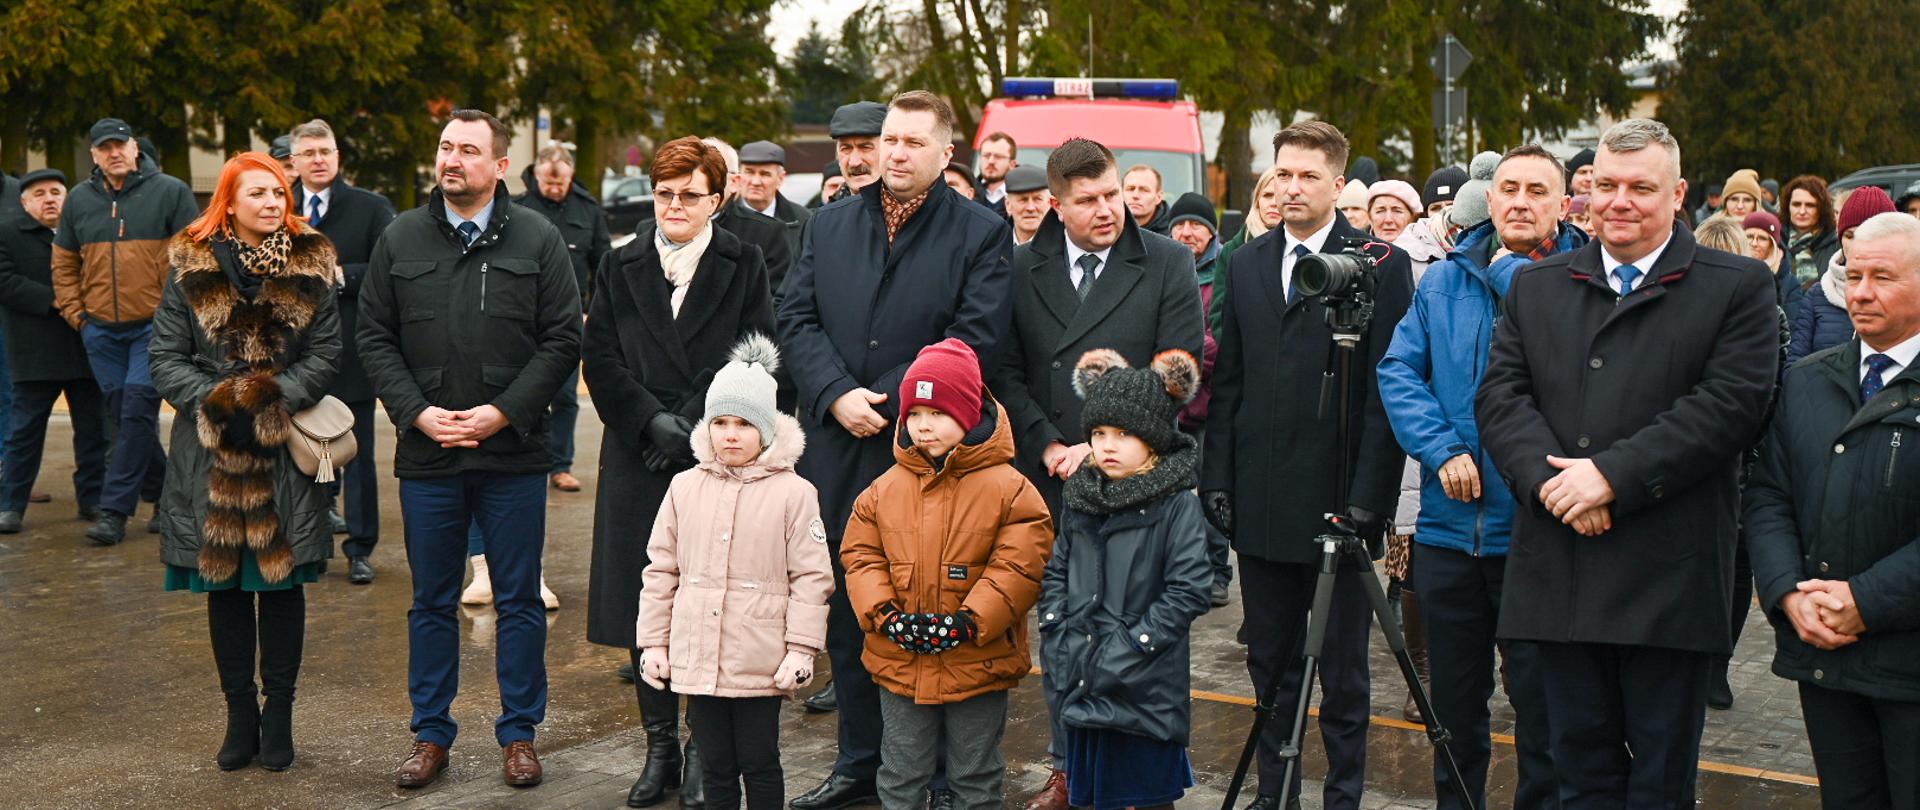 Zdjęcie na dworze, minister Czarnek stoi w dużej grupie ludzi, z przodu stoi troje małych dzieci, obok nich kamera na statywie, z tyłu drzewa.